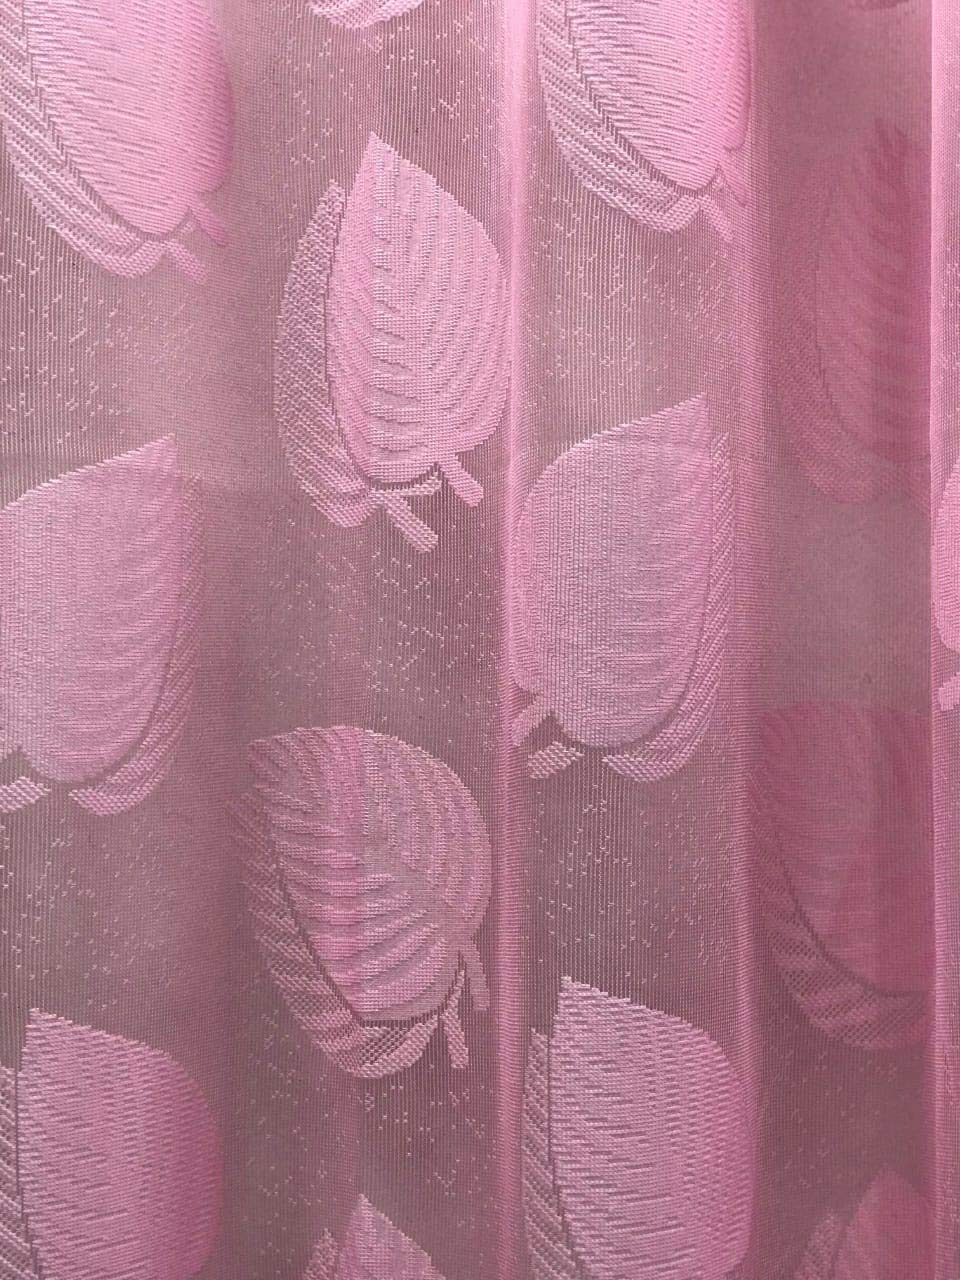 Leaf Design Pink Sheer